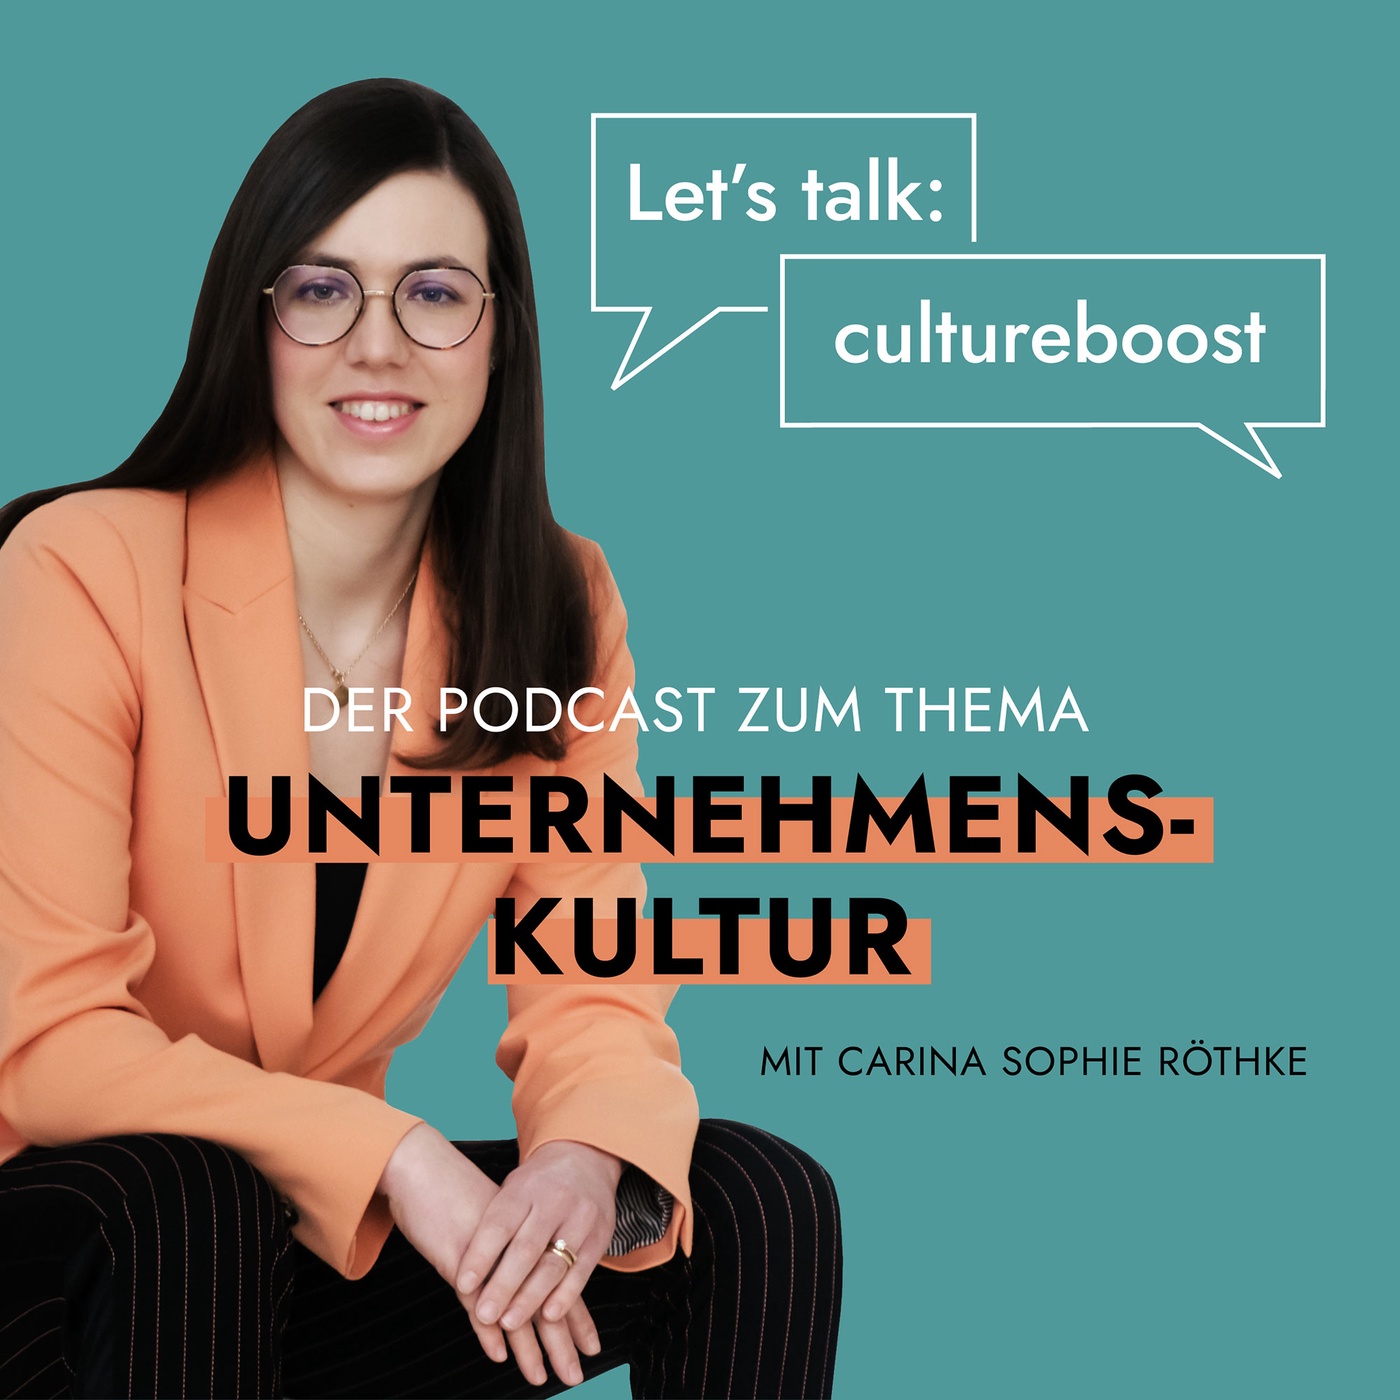 Let's talk: cultureboost